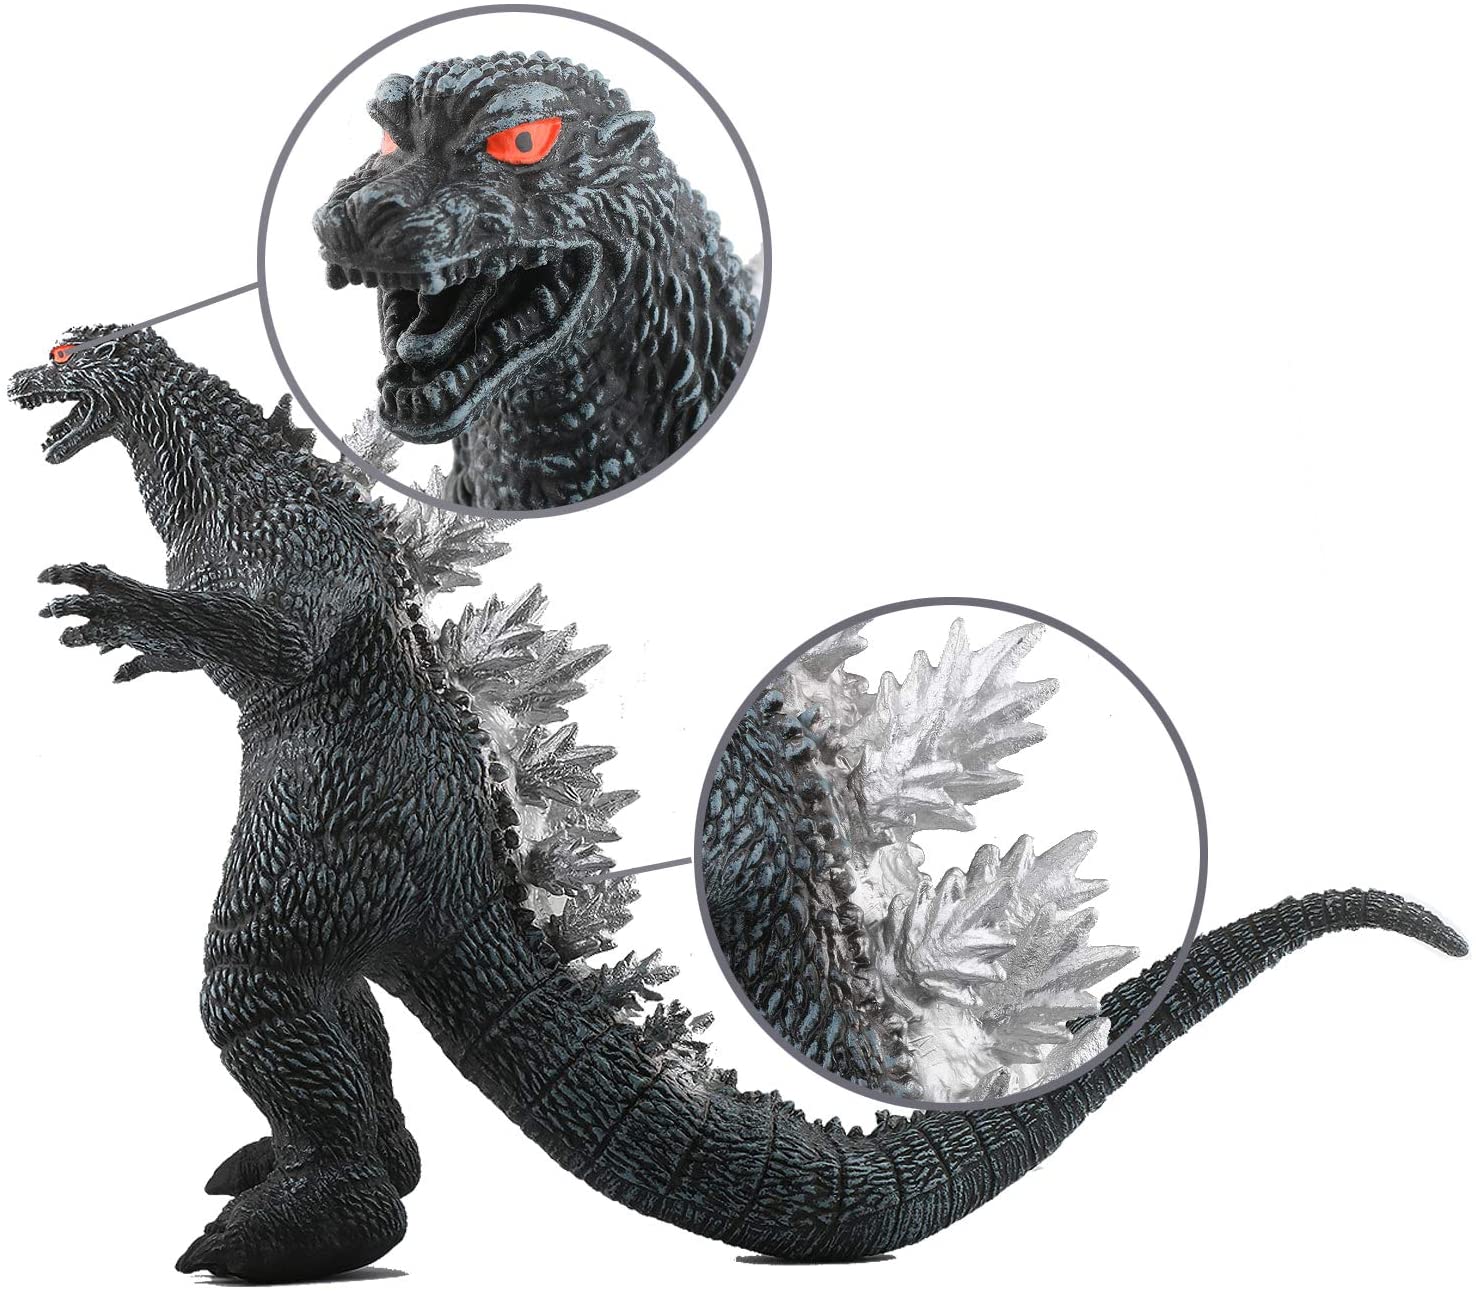 Mô Hình Đồ Chơi Khủng Long Godzilla 26cm